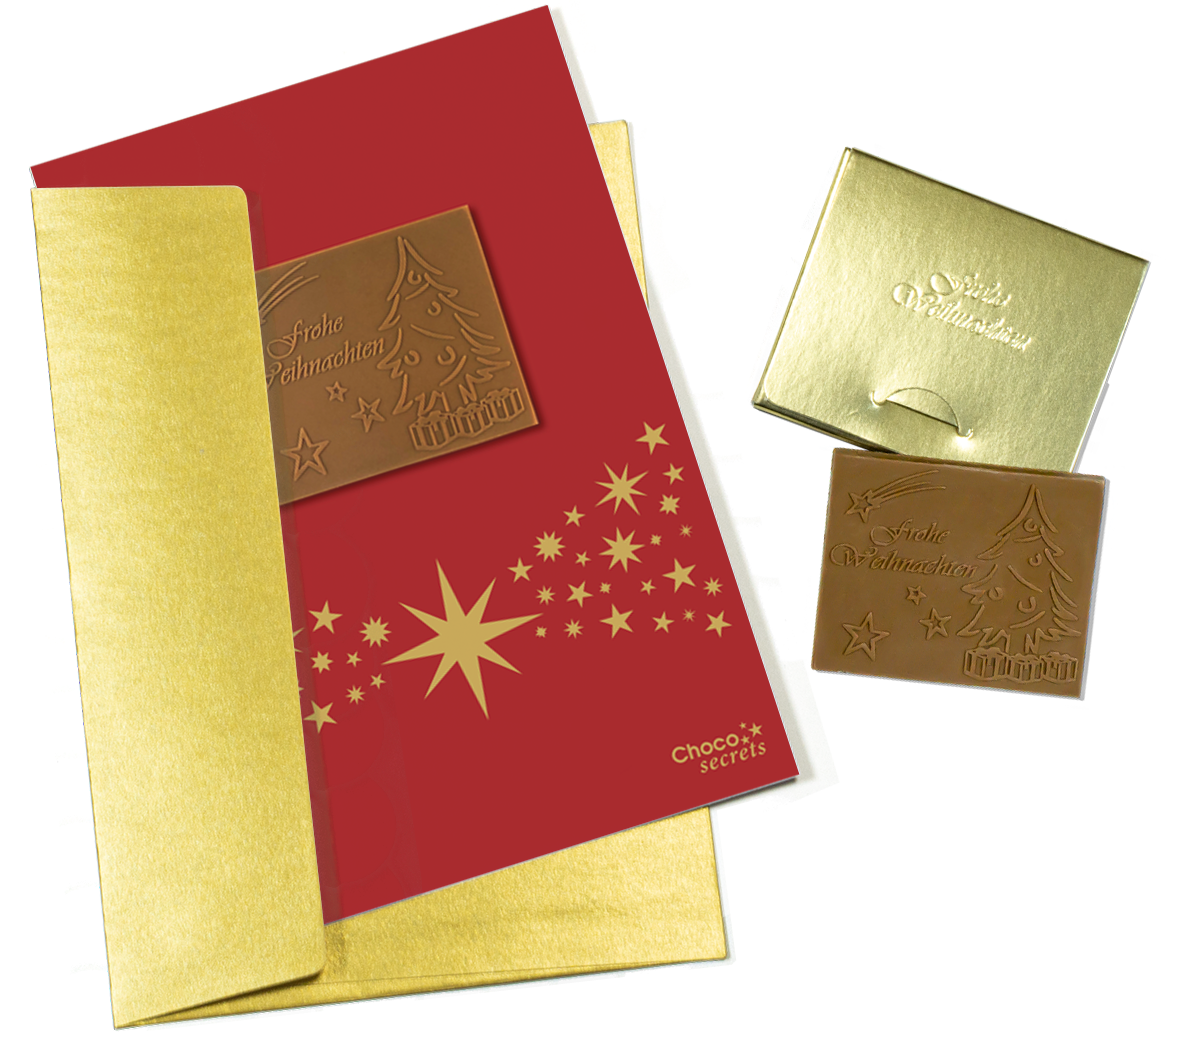 Weihnachtskarten mit Schokoladenprägung in Goldbox, 5er-Set, Kartendesign: rot mit Sternenband, Schokoladenprägung: „Frohe Weihnachten“, Umschlag in Gold